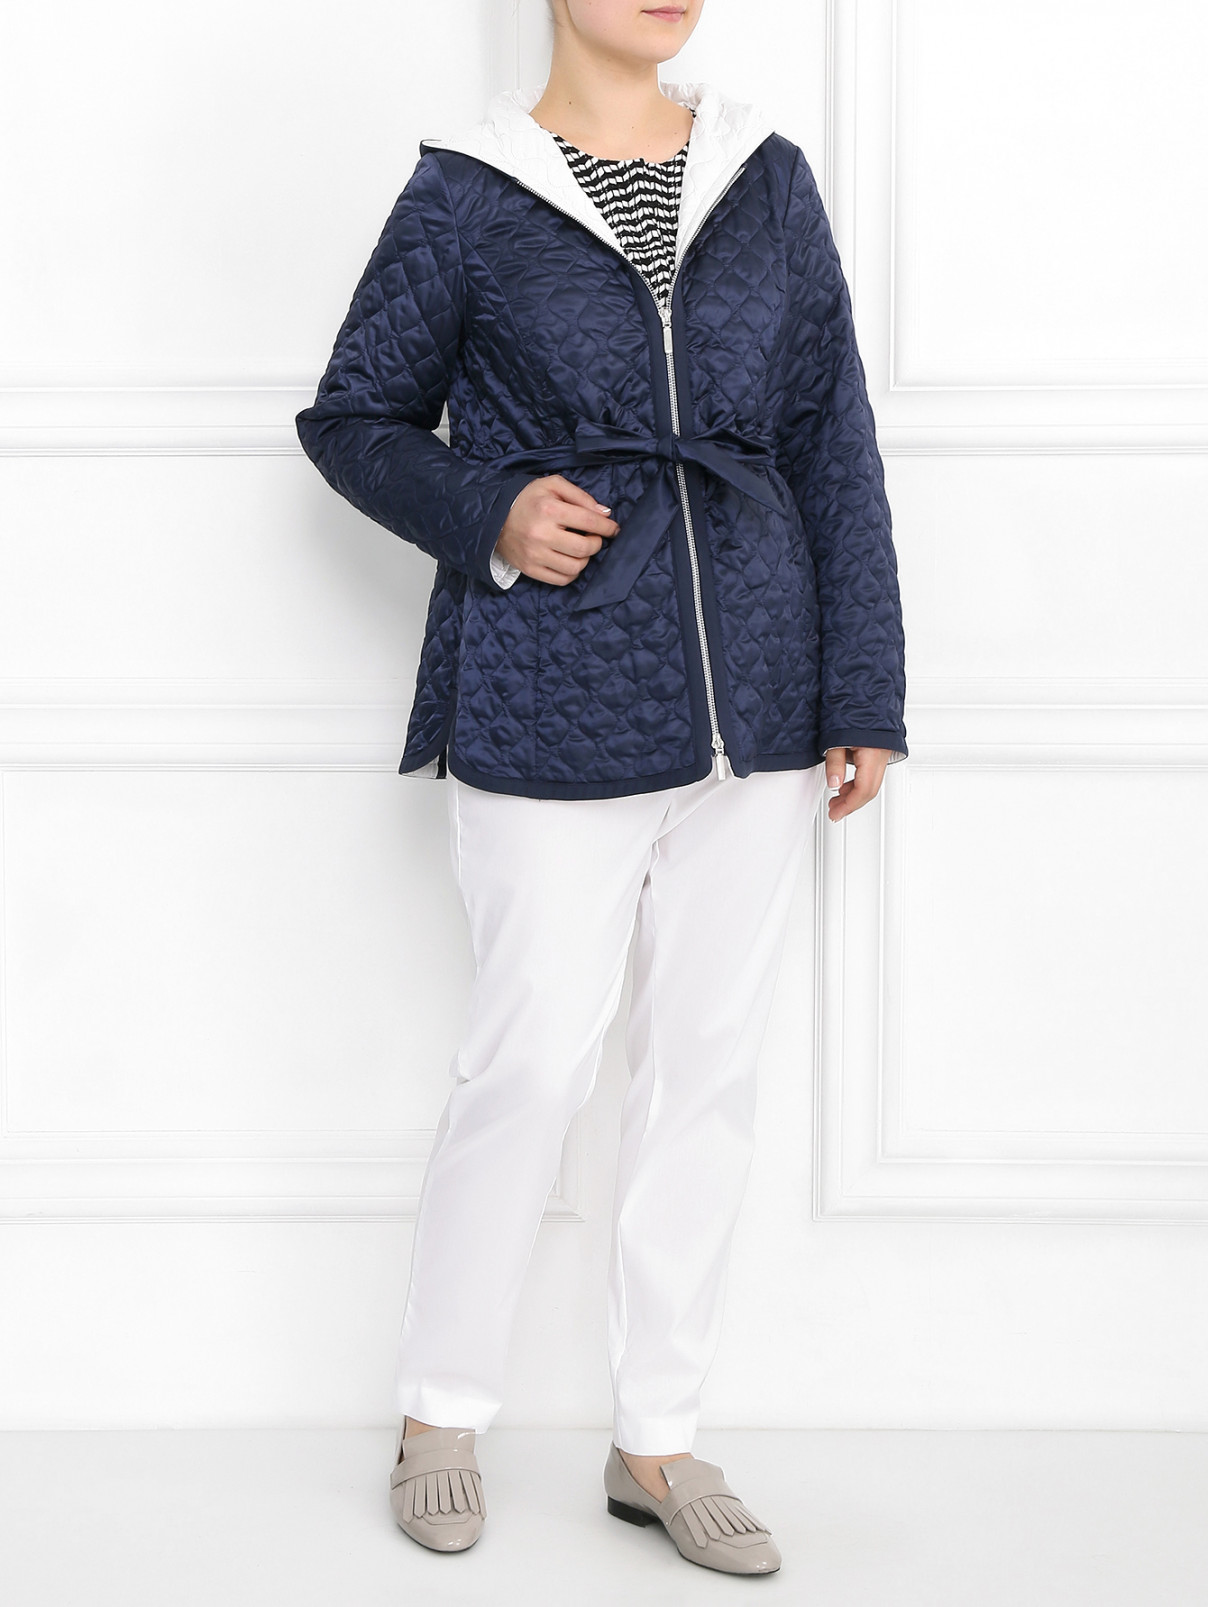 Стеганая куртка с капюшоном Voyage by Marina Rinaldi  –  Модель Общий вид  – Цвет:  Синий